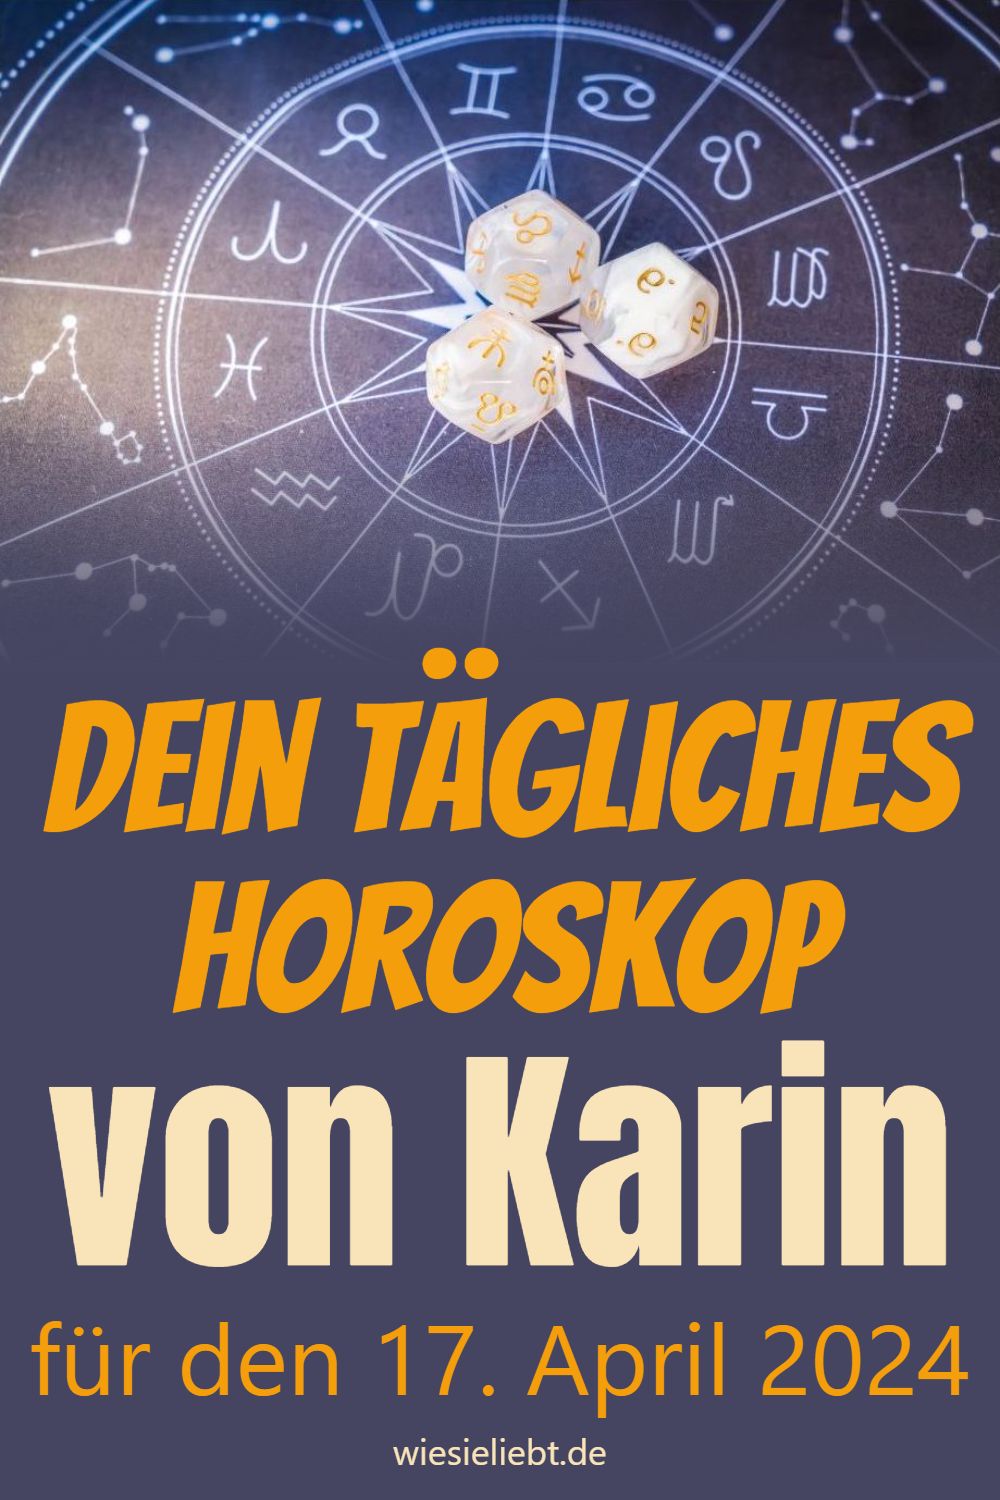 Dein tägliches Horoskop von Karin für den 17. April 2024